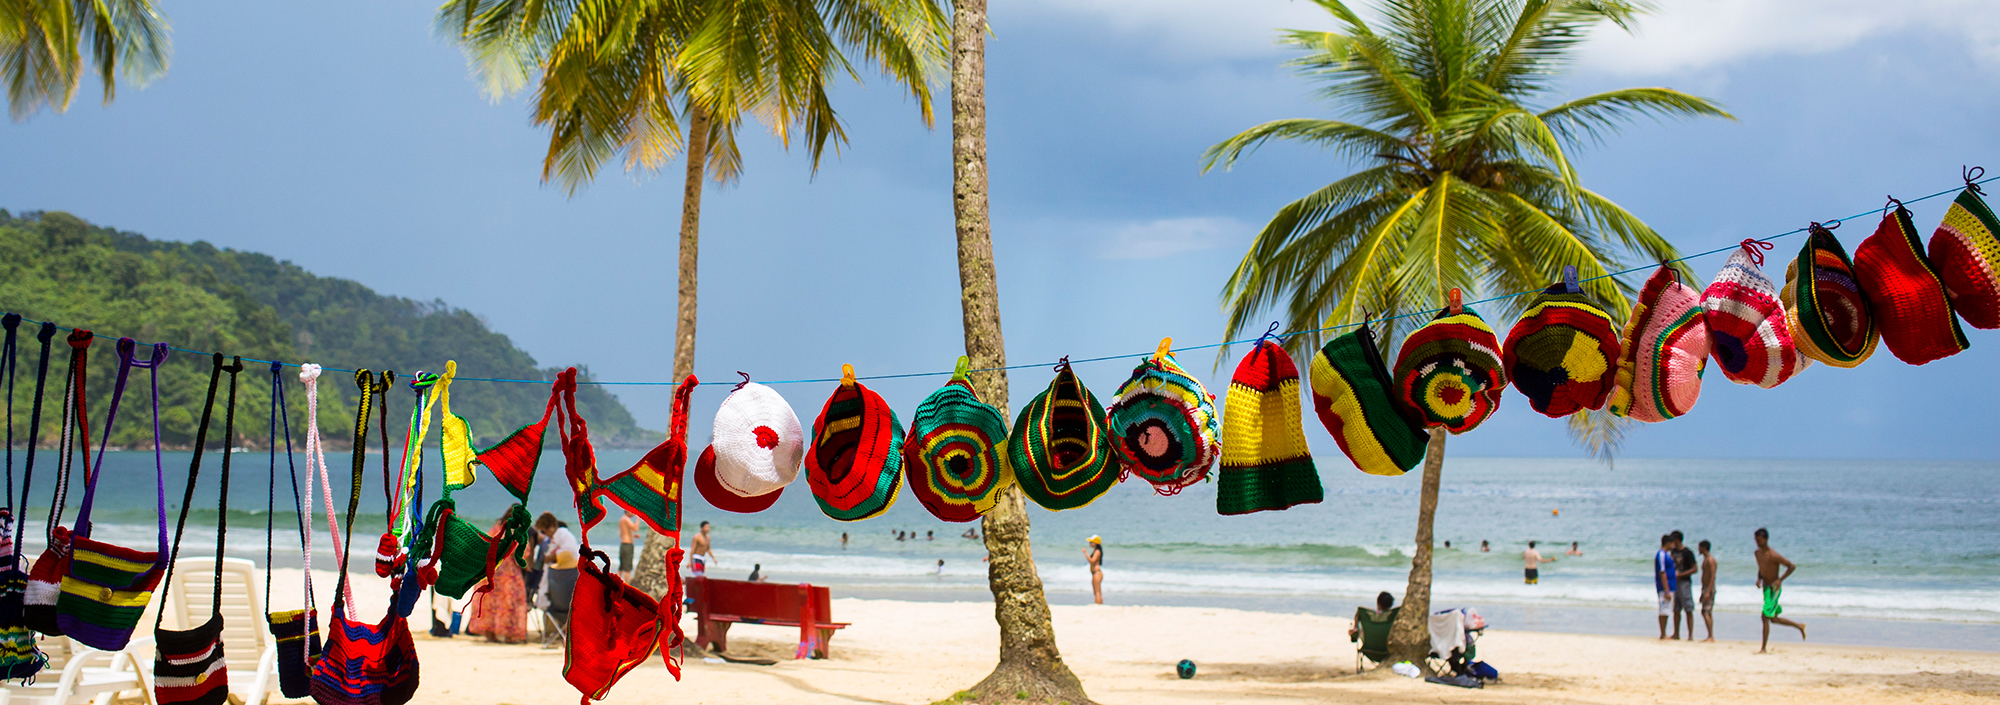 Wäscheleine mit bunten Taschen und Mützen am Strand von Maracas auf Trinidad